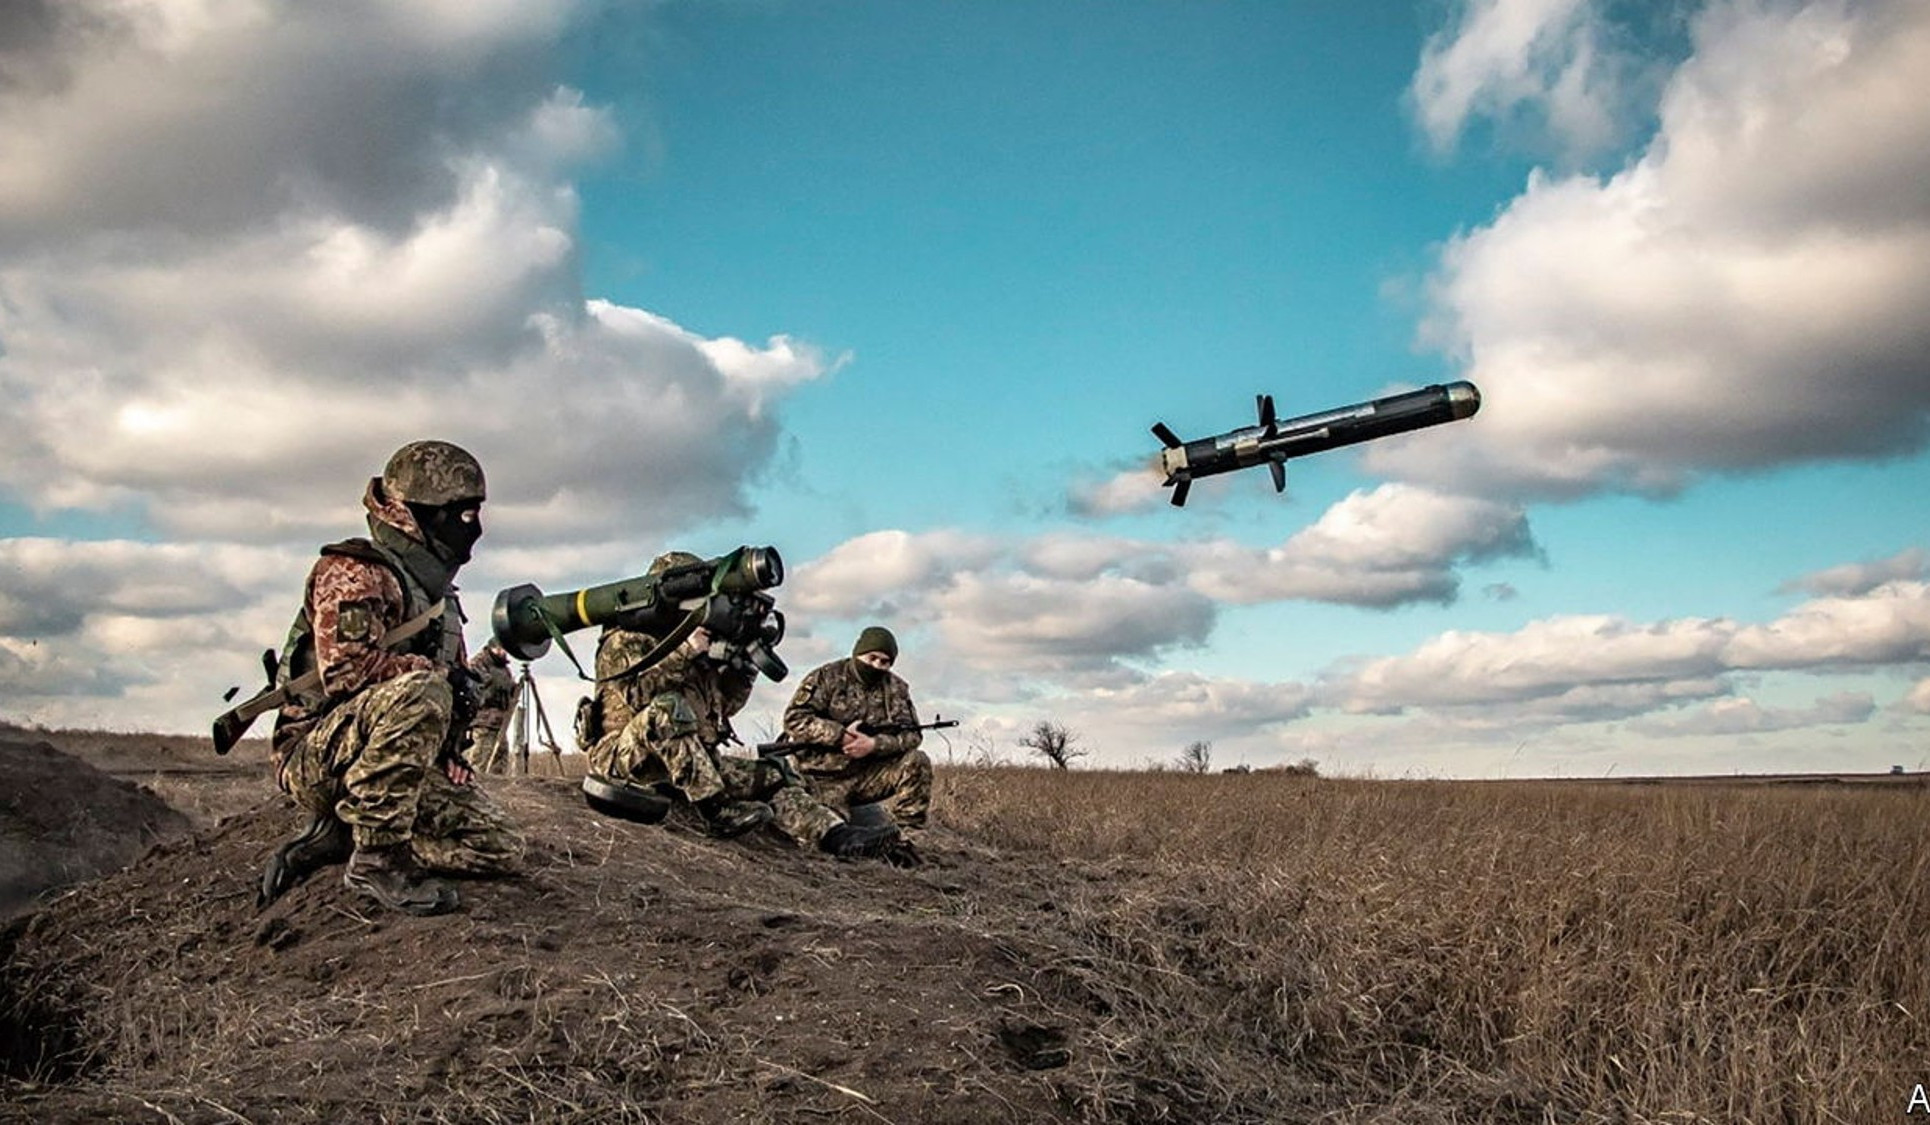 ԱՄՆ-ը այսօր կհայտարարի Ուկրաինային 200 մլն դոլարի ռազմական օգնության նոր փաթեթ հատկացնելու մասին․ Reuters